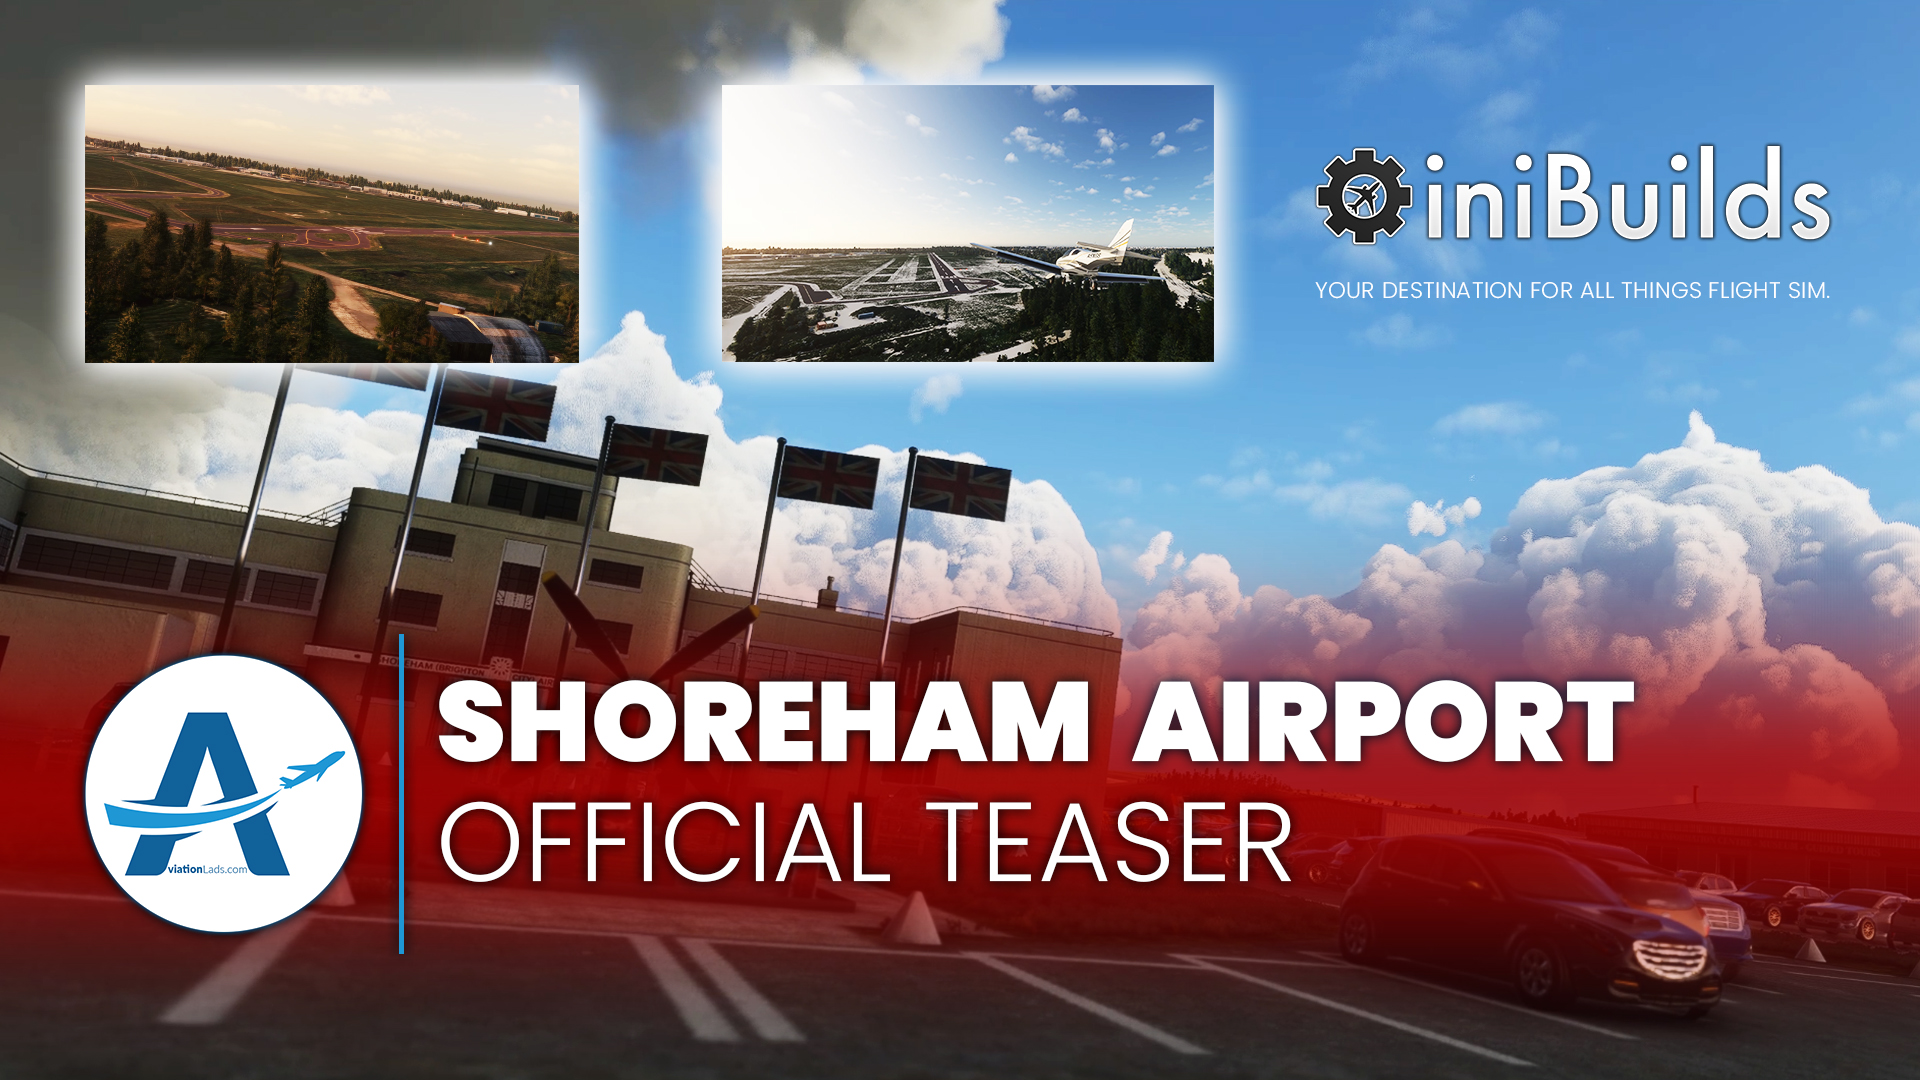 [TEASER] iniBuilds – Shoreham Airport